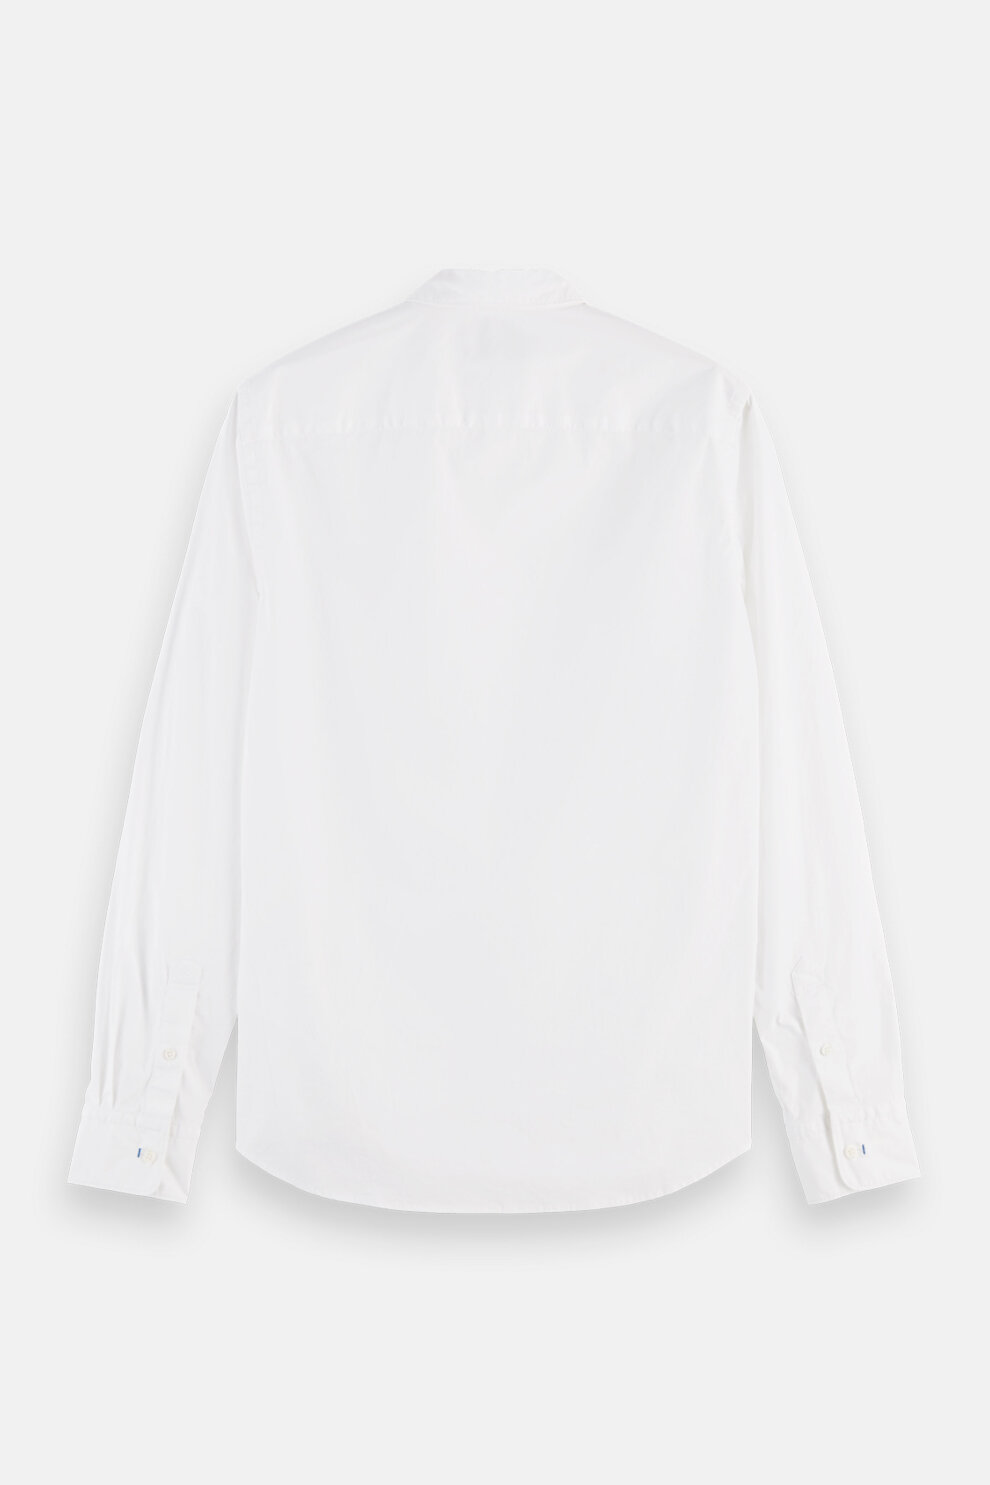 MUŠKARCI - Košulje - Scotch & Soda košulja - Dugi rukavi - Bijela